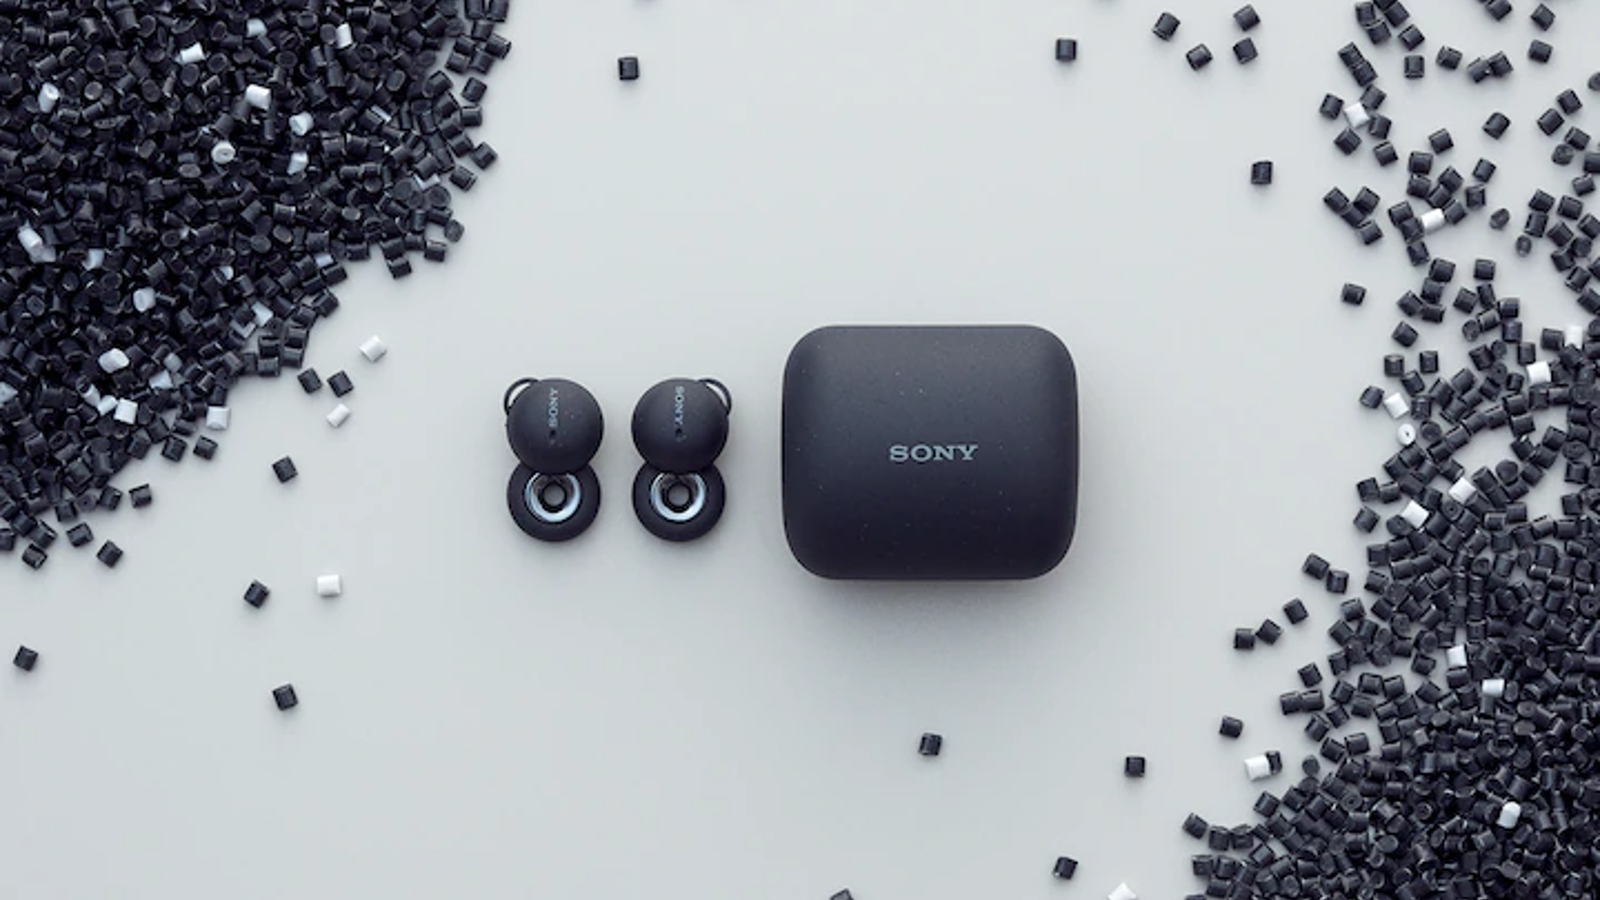 Утечка Sony Linkbuds предполагает, что новые беспроводные наушники обеспечат лучшее качество звука